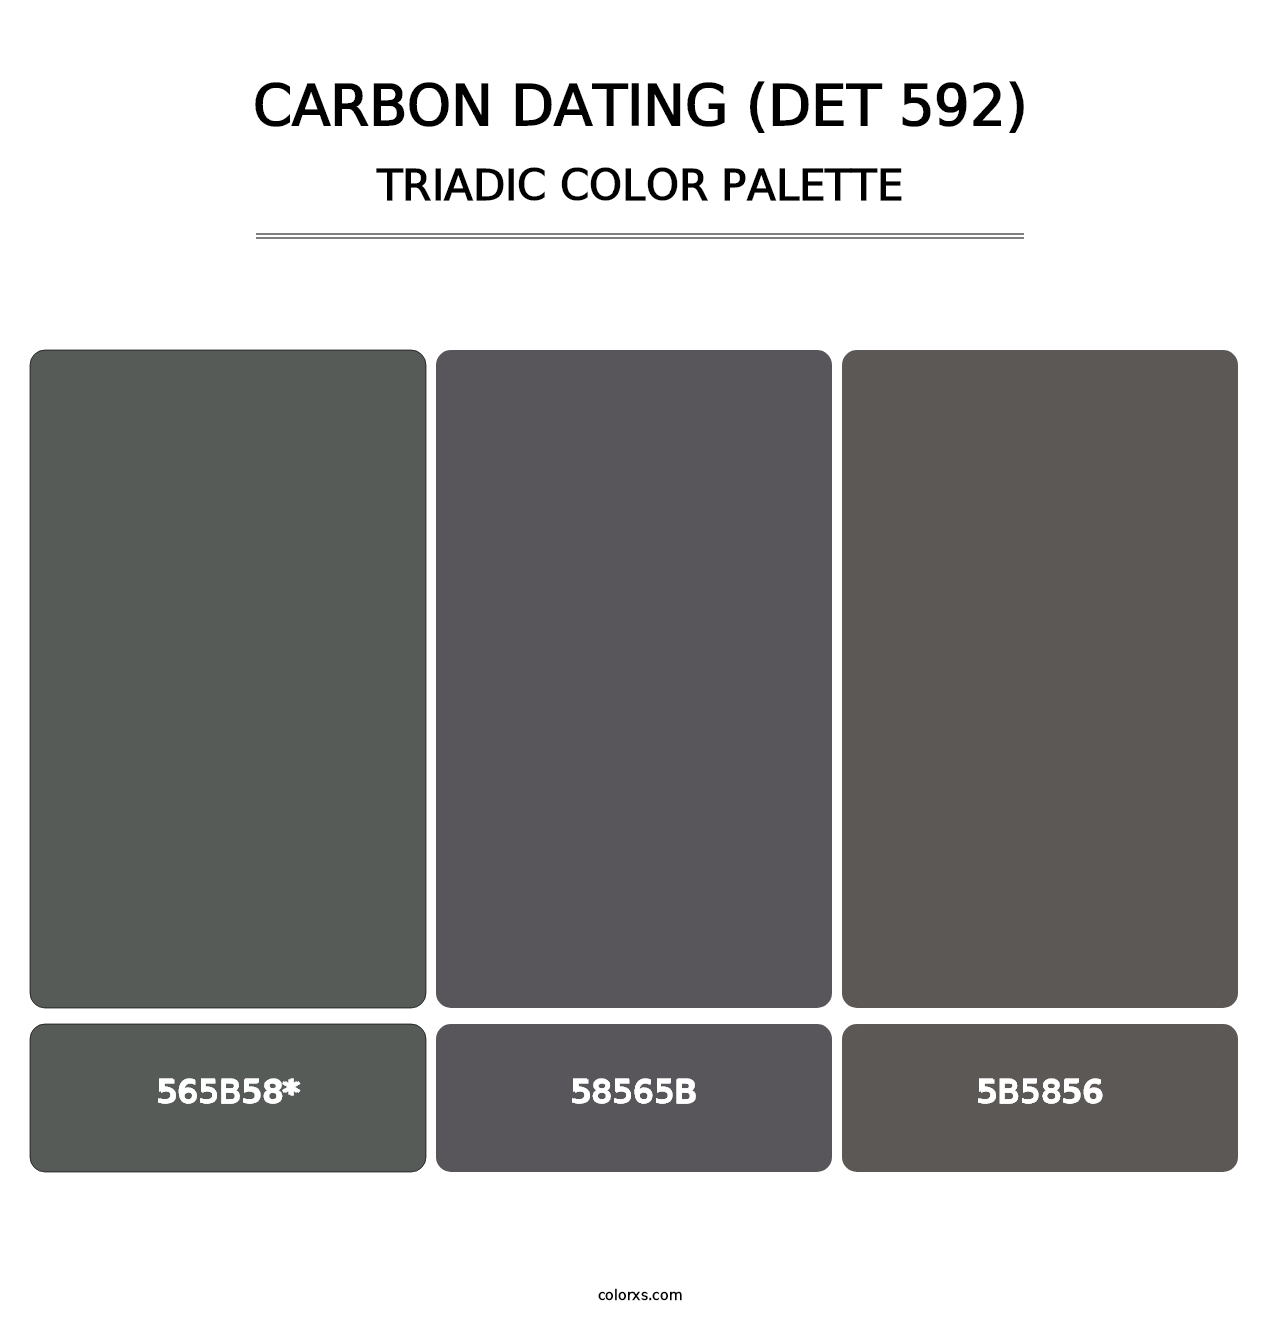 Carbon Dating (DET 592) - Triadic Color Palette